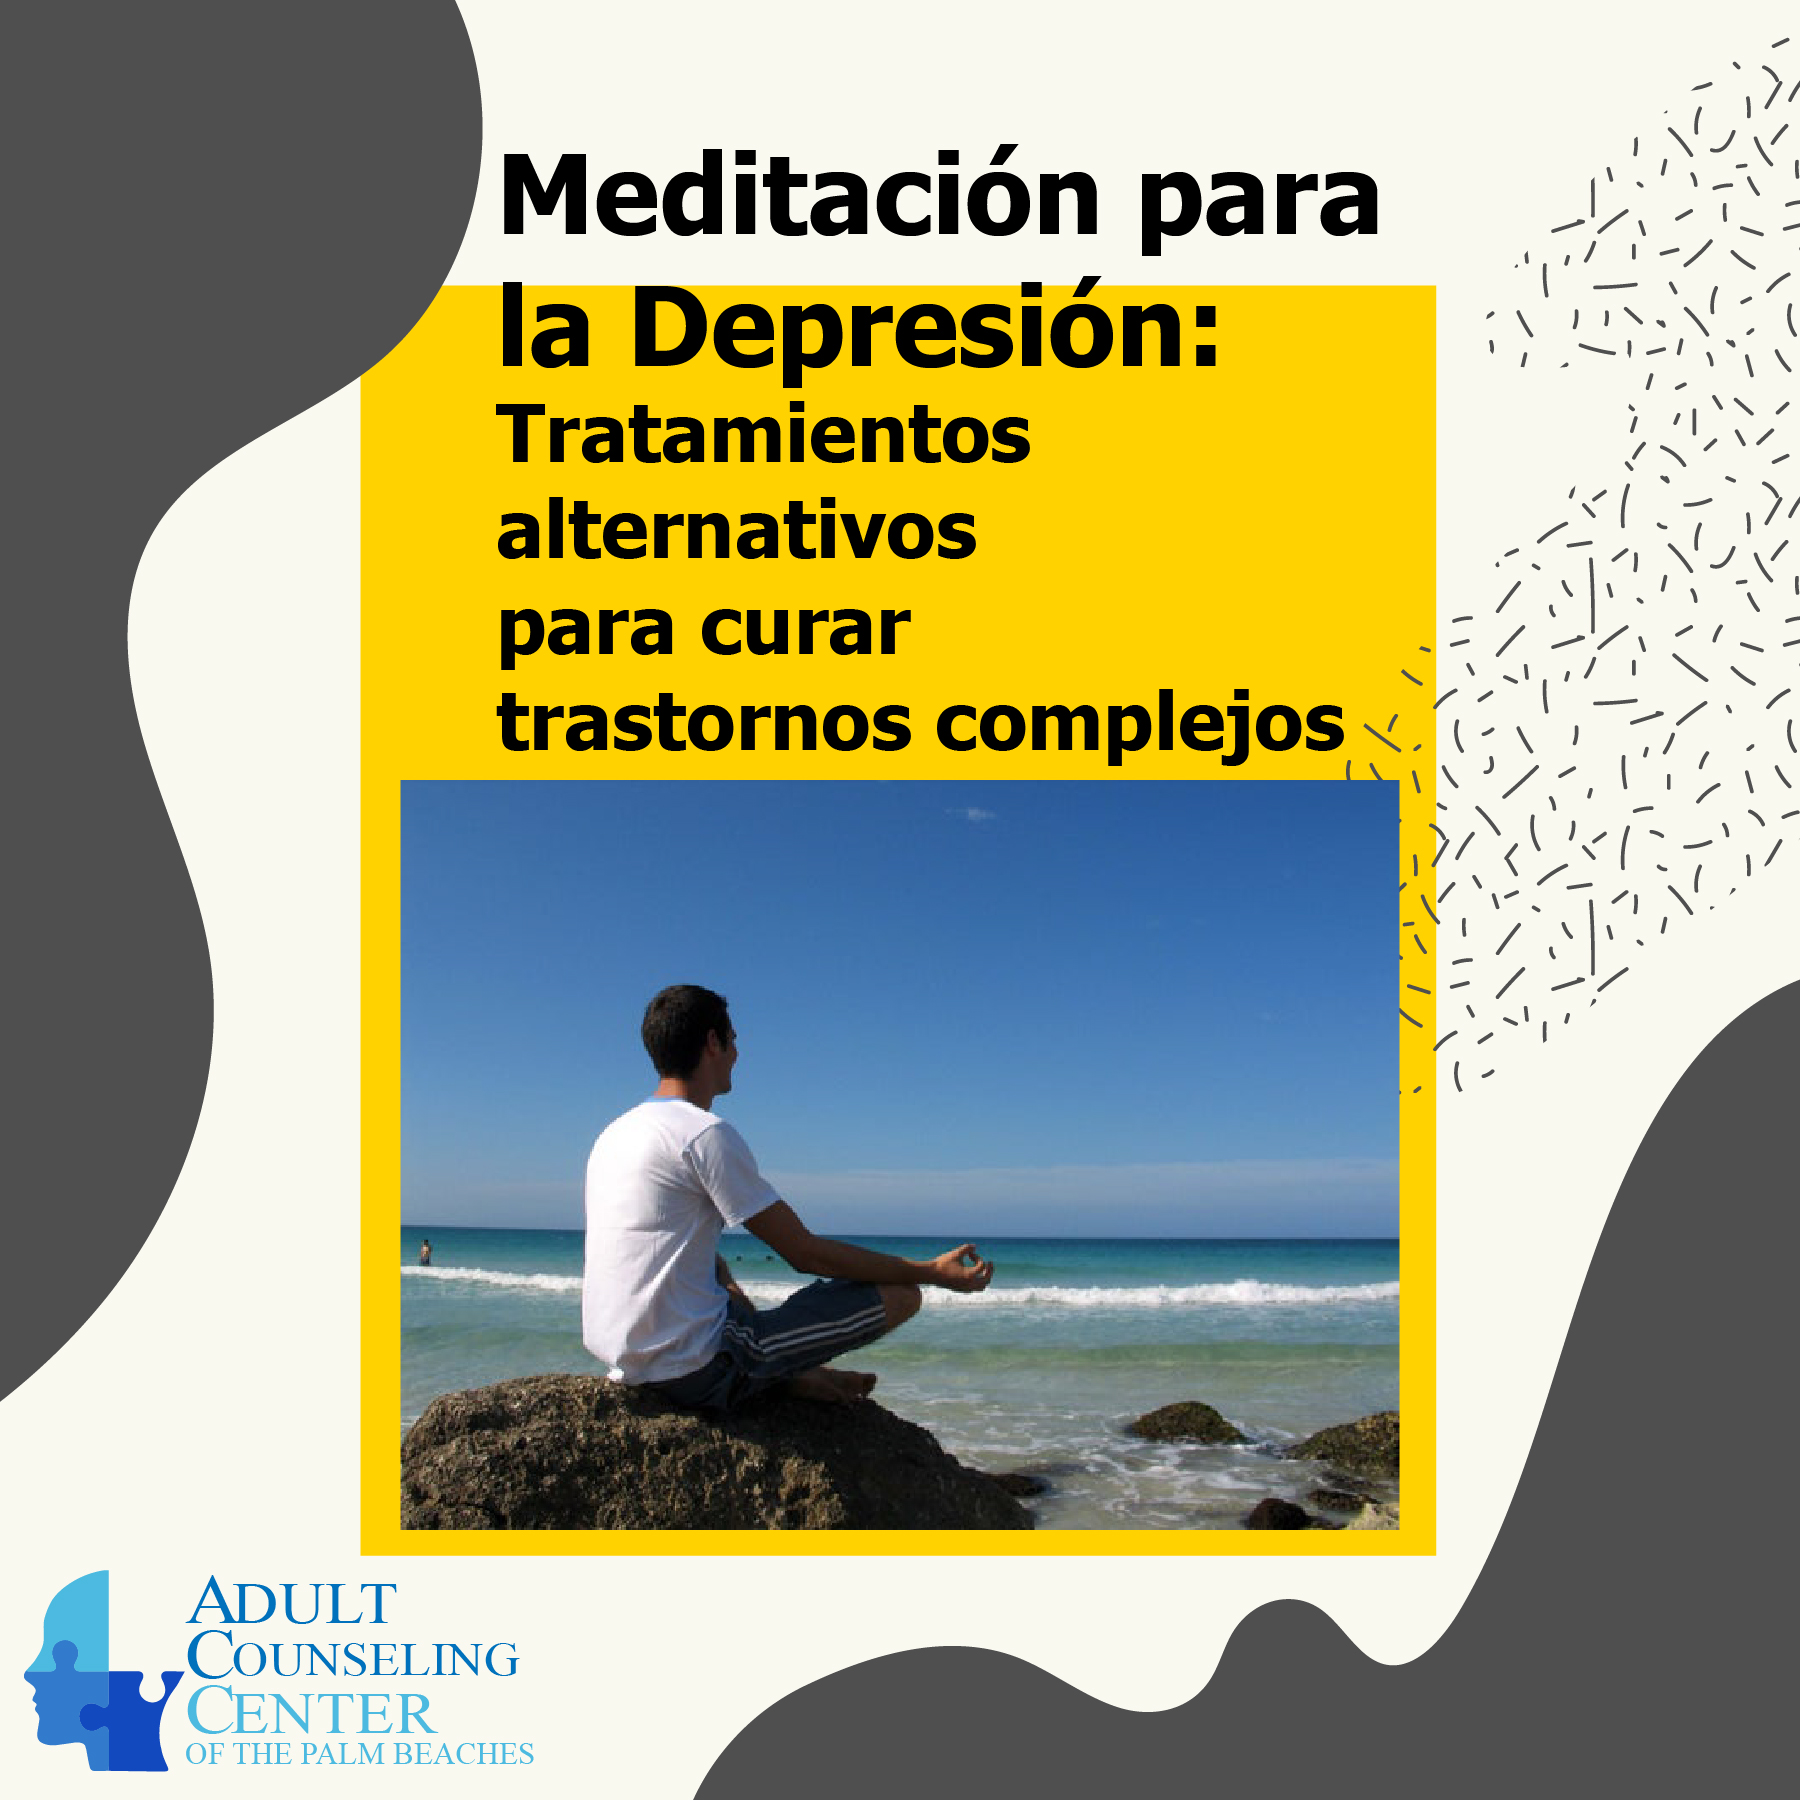 Meditación para la depresión: Tratamientos alternativos para curar trastornos complejos